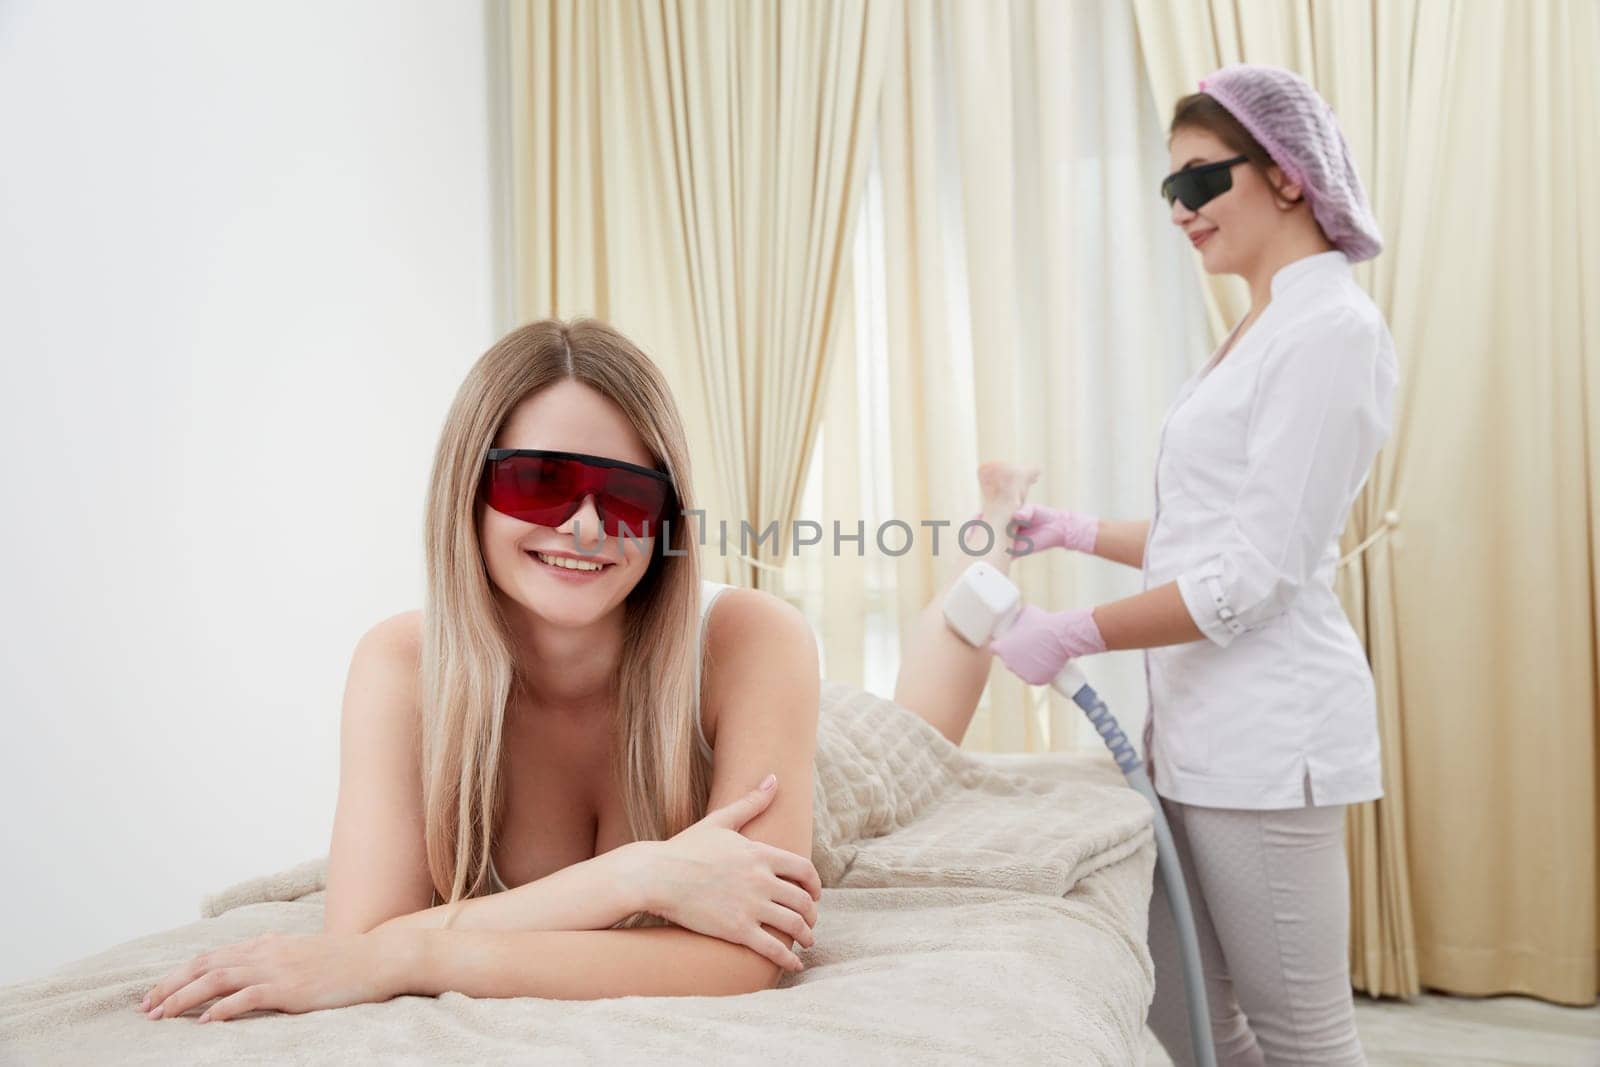 Beauty Salon: Leg Laser Treatment by Mariakray